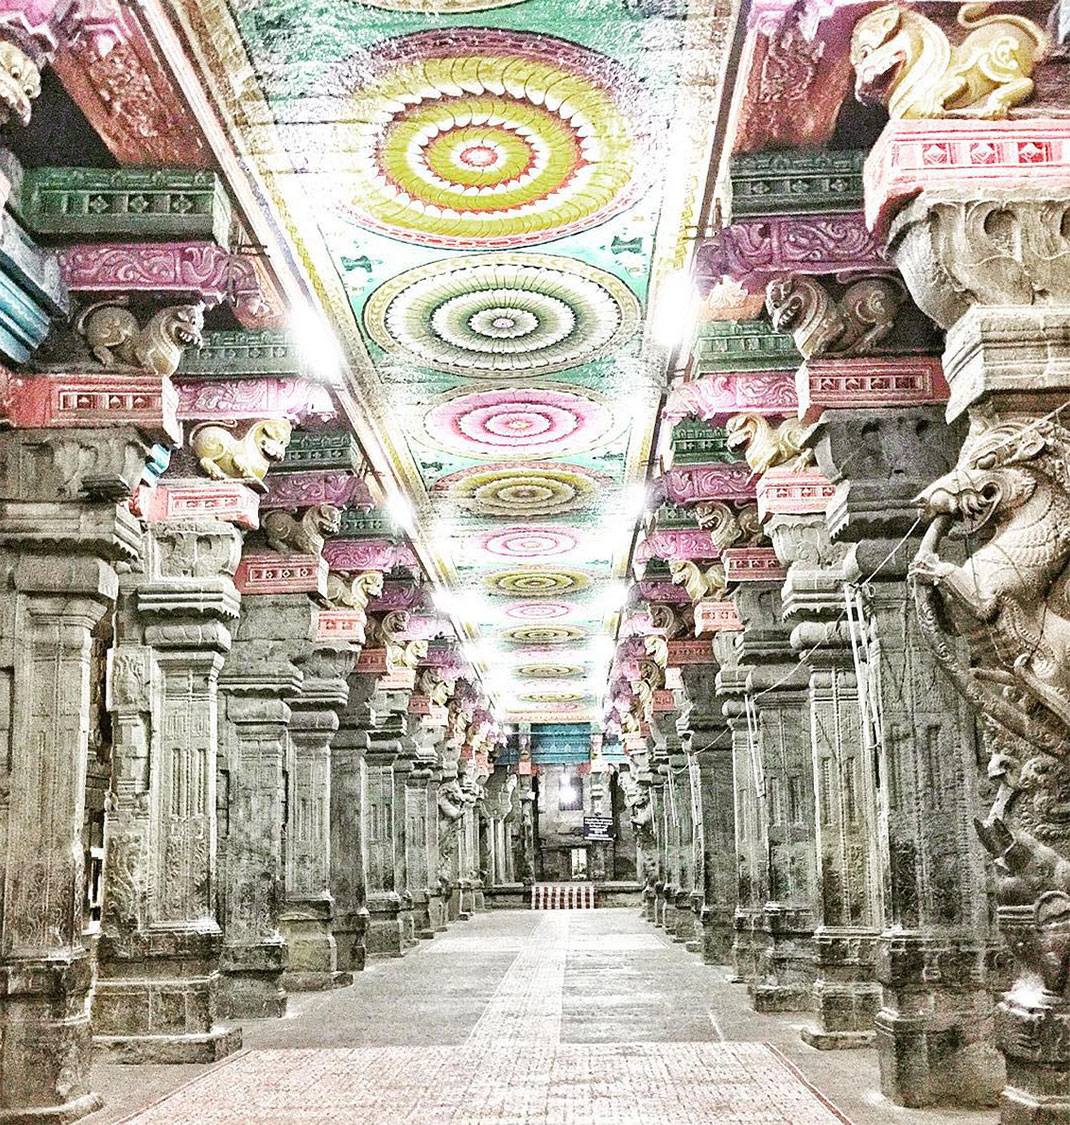 Admirez le temple indien de Mînâkshî dont les superbes couleurs n’ont d’égal que l’immensité de l’architecture